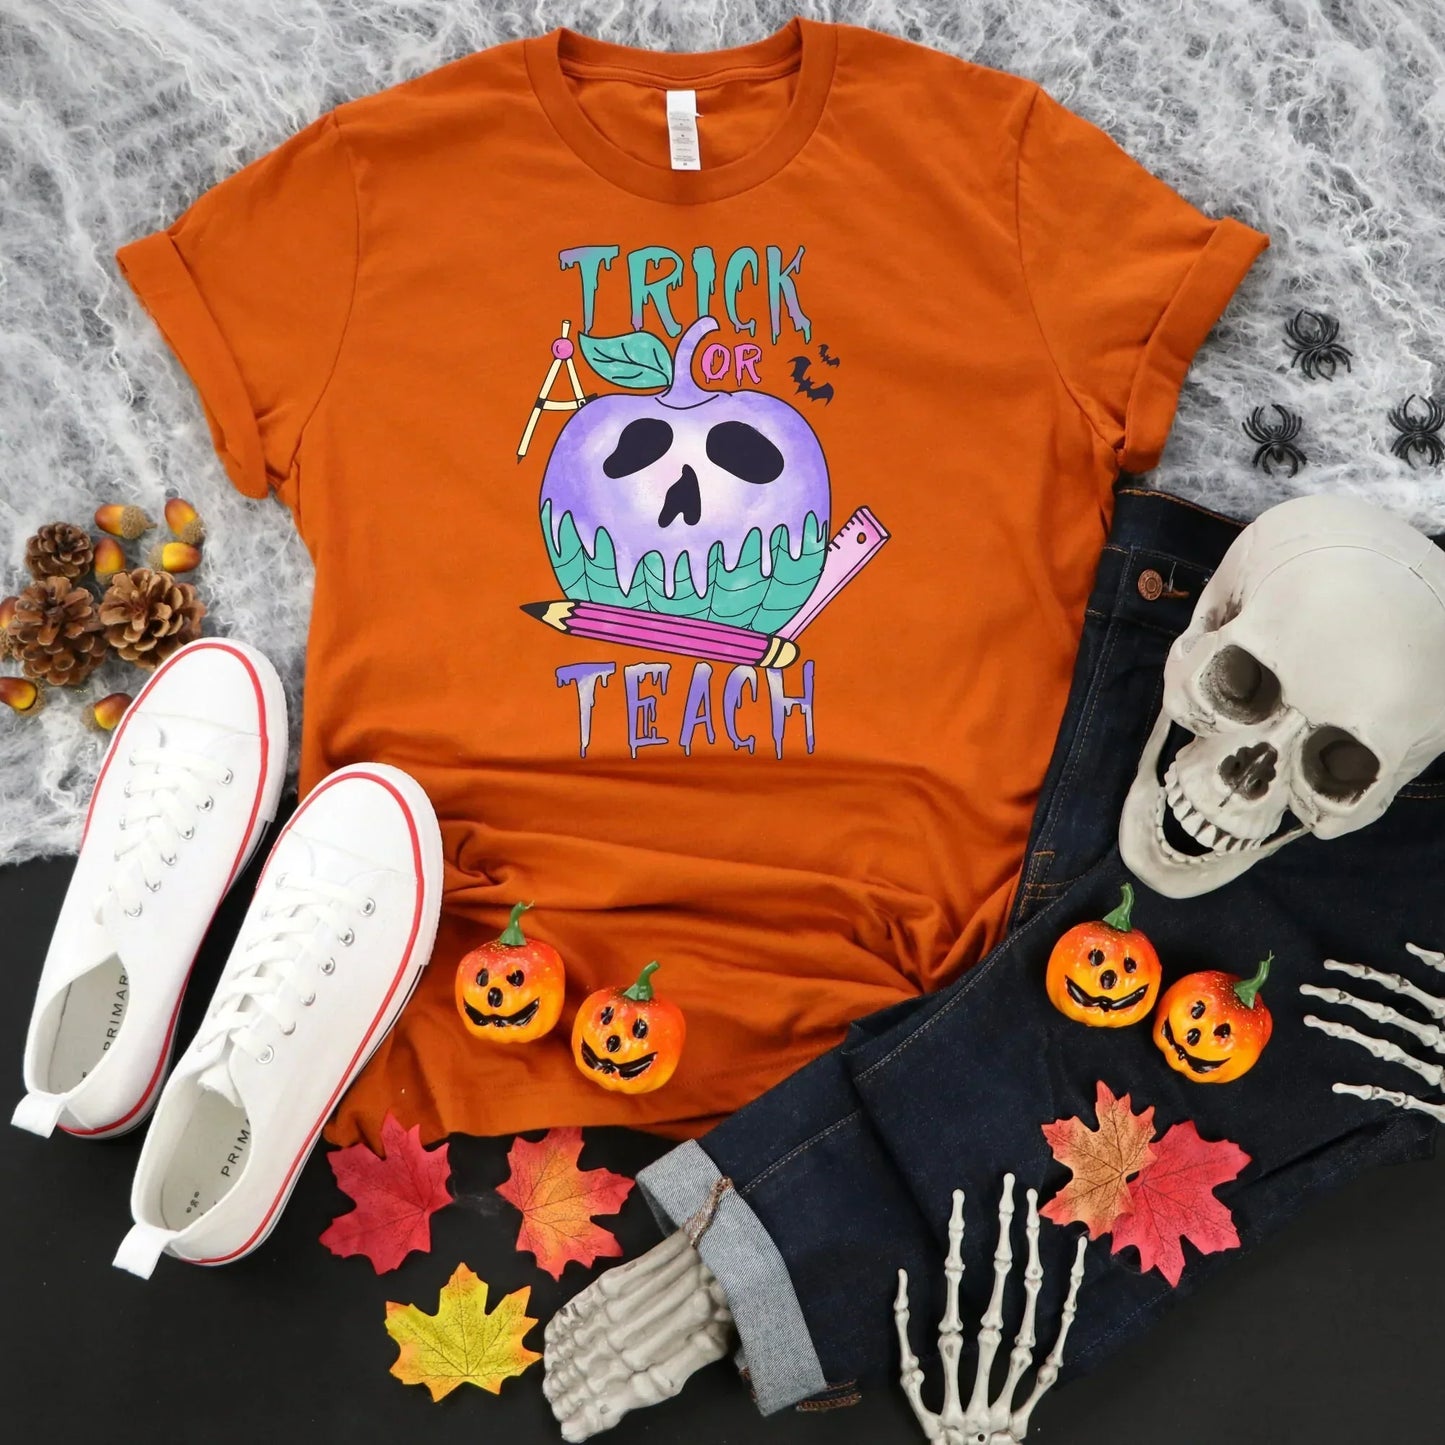 Halloween Teacher Shirt, Trick or Teach Shirt, Halloween Sweatshirt, Spooky Teacher Shirt, Halloween Pumpkin, Happy Halloween, Teacher Gift HMDesignStudioUS